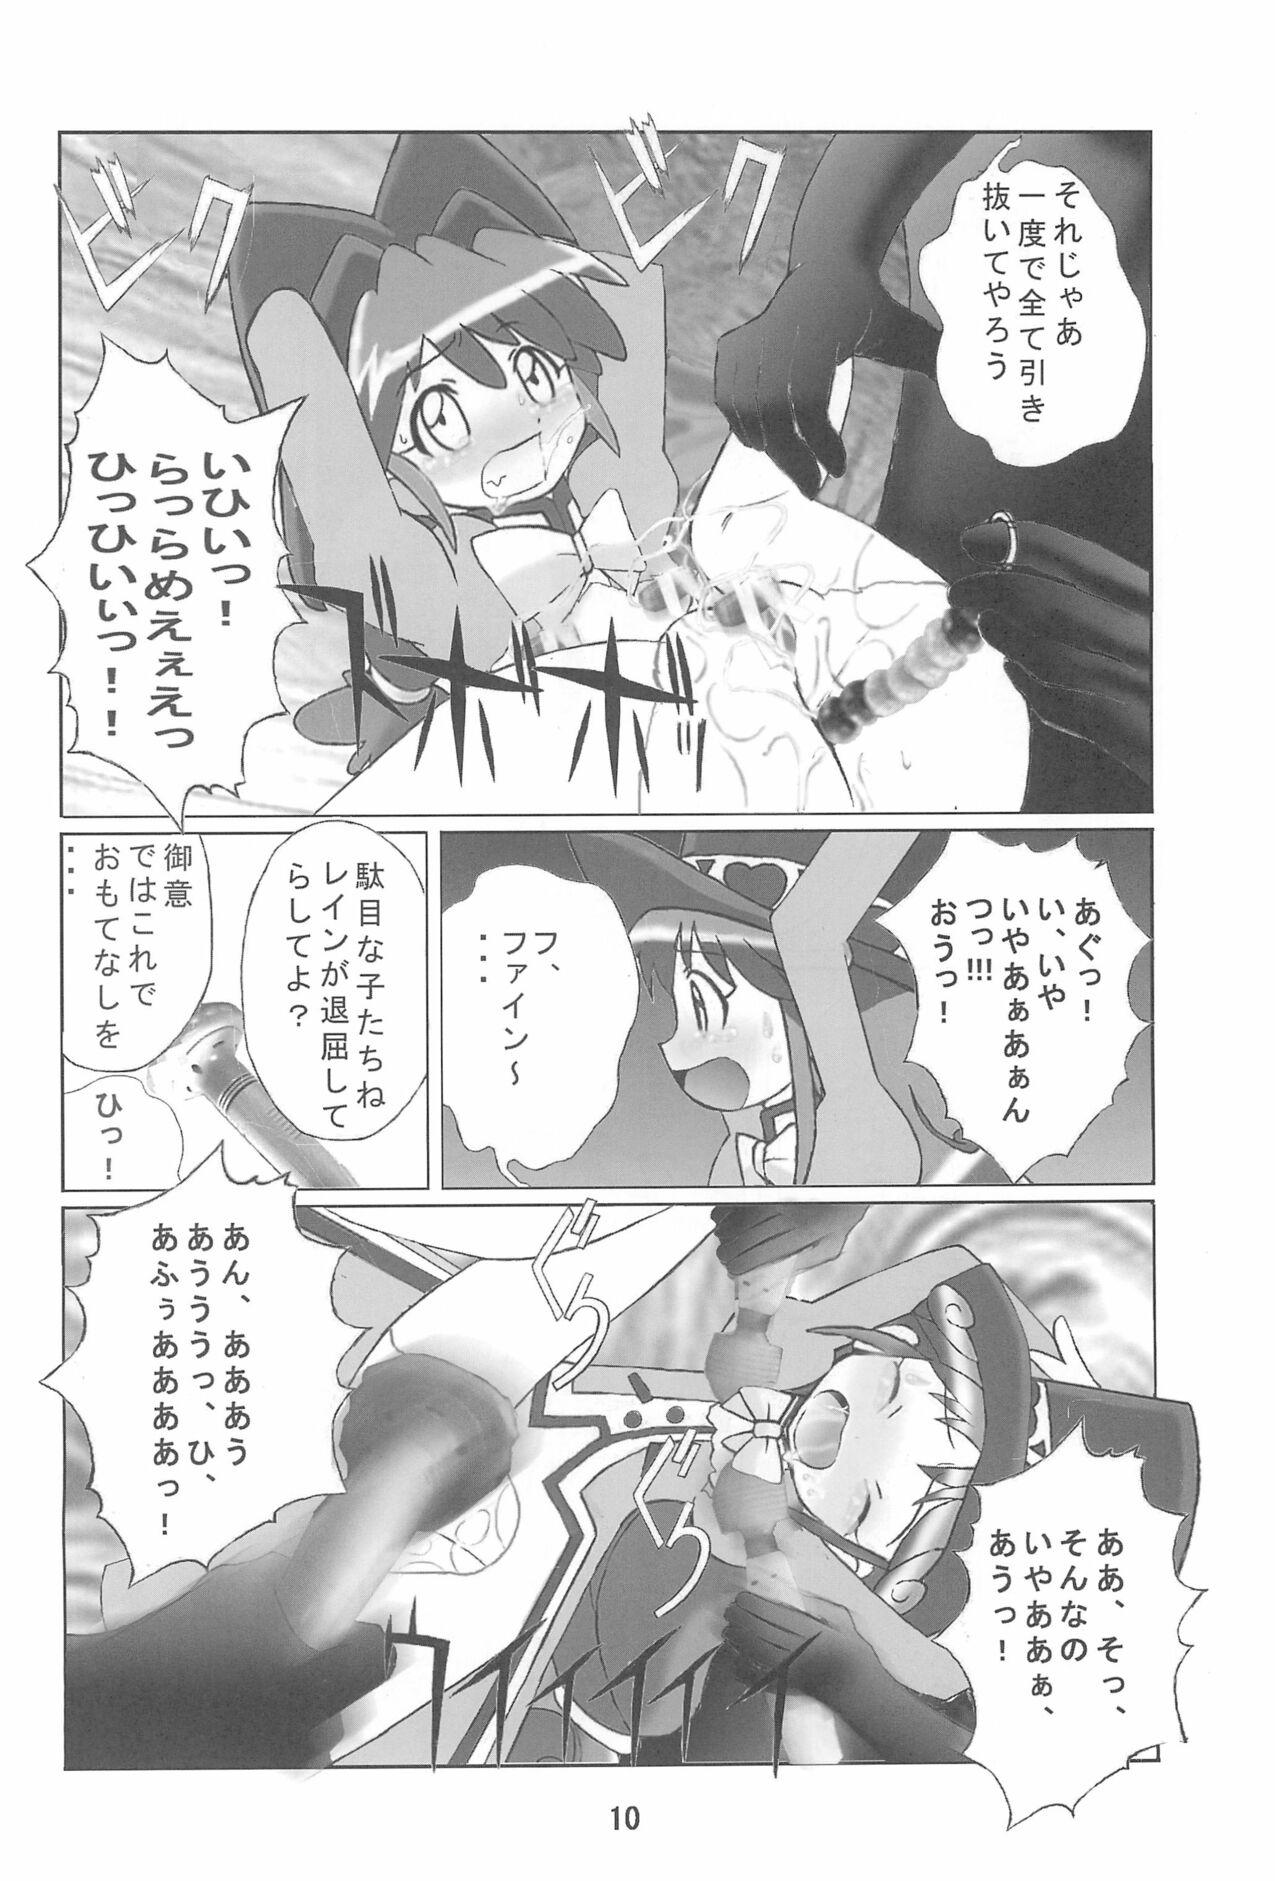 Horny Sluts Kuuronziyou 14 - Fushigiboshi no futagohime | twin princesses of the wonder planet Curious - Page 10